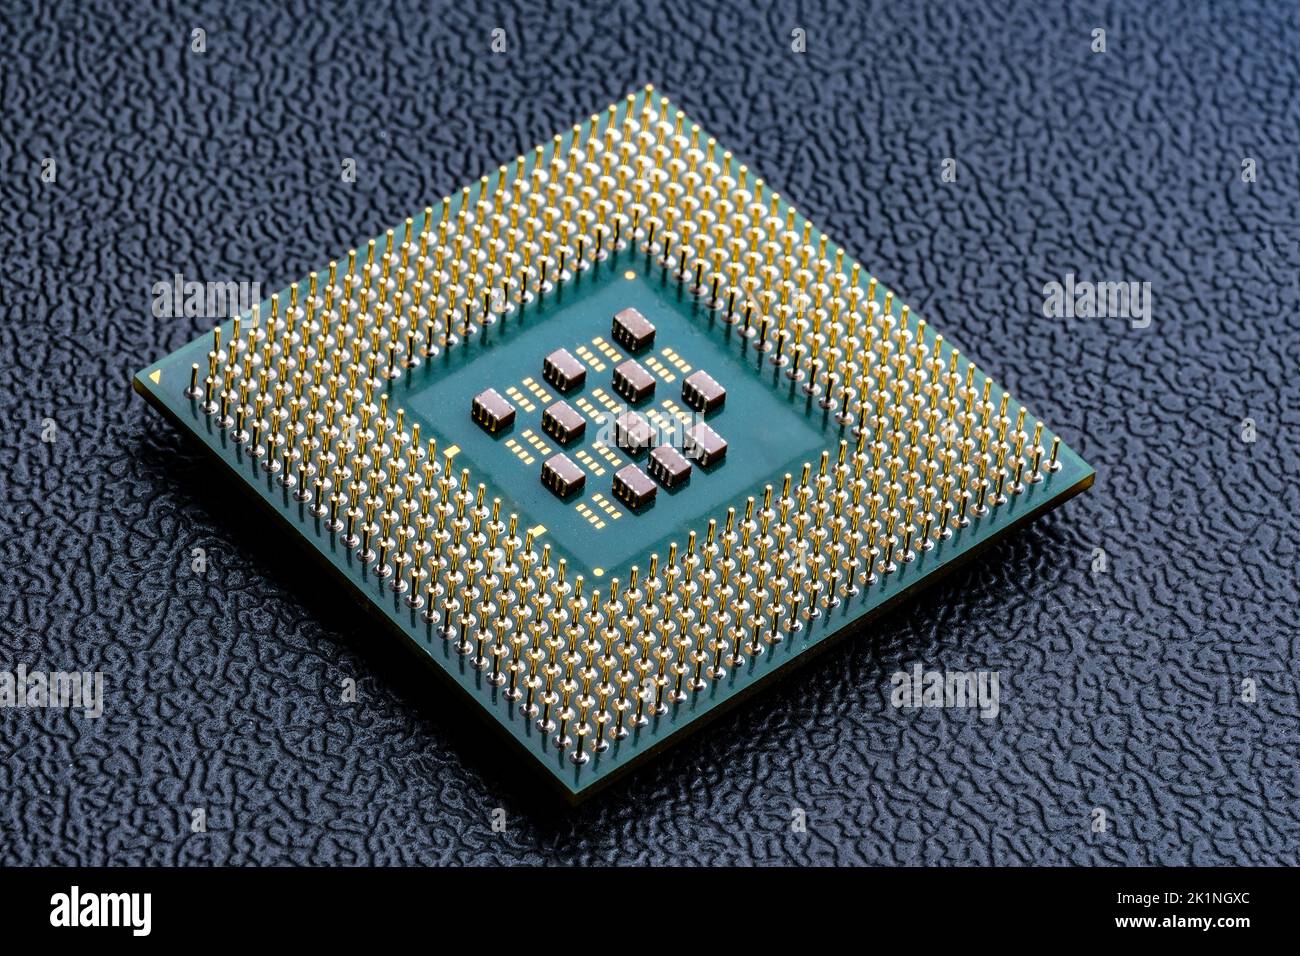 Große Computer-Chip-CPU mit Hunderten von Goldstiften und winzigen Komponenten - Kondensatoren, Widerstände auf der Platine. Konzept für Mikrochips und Halbleiter Stockfoto